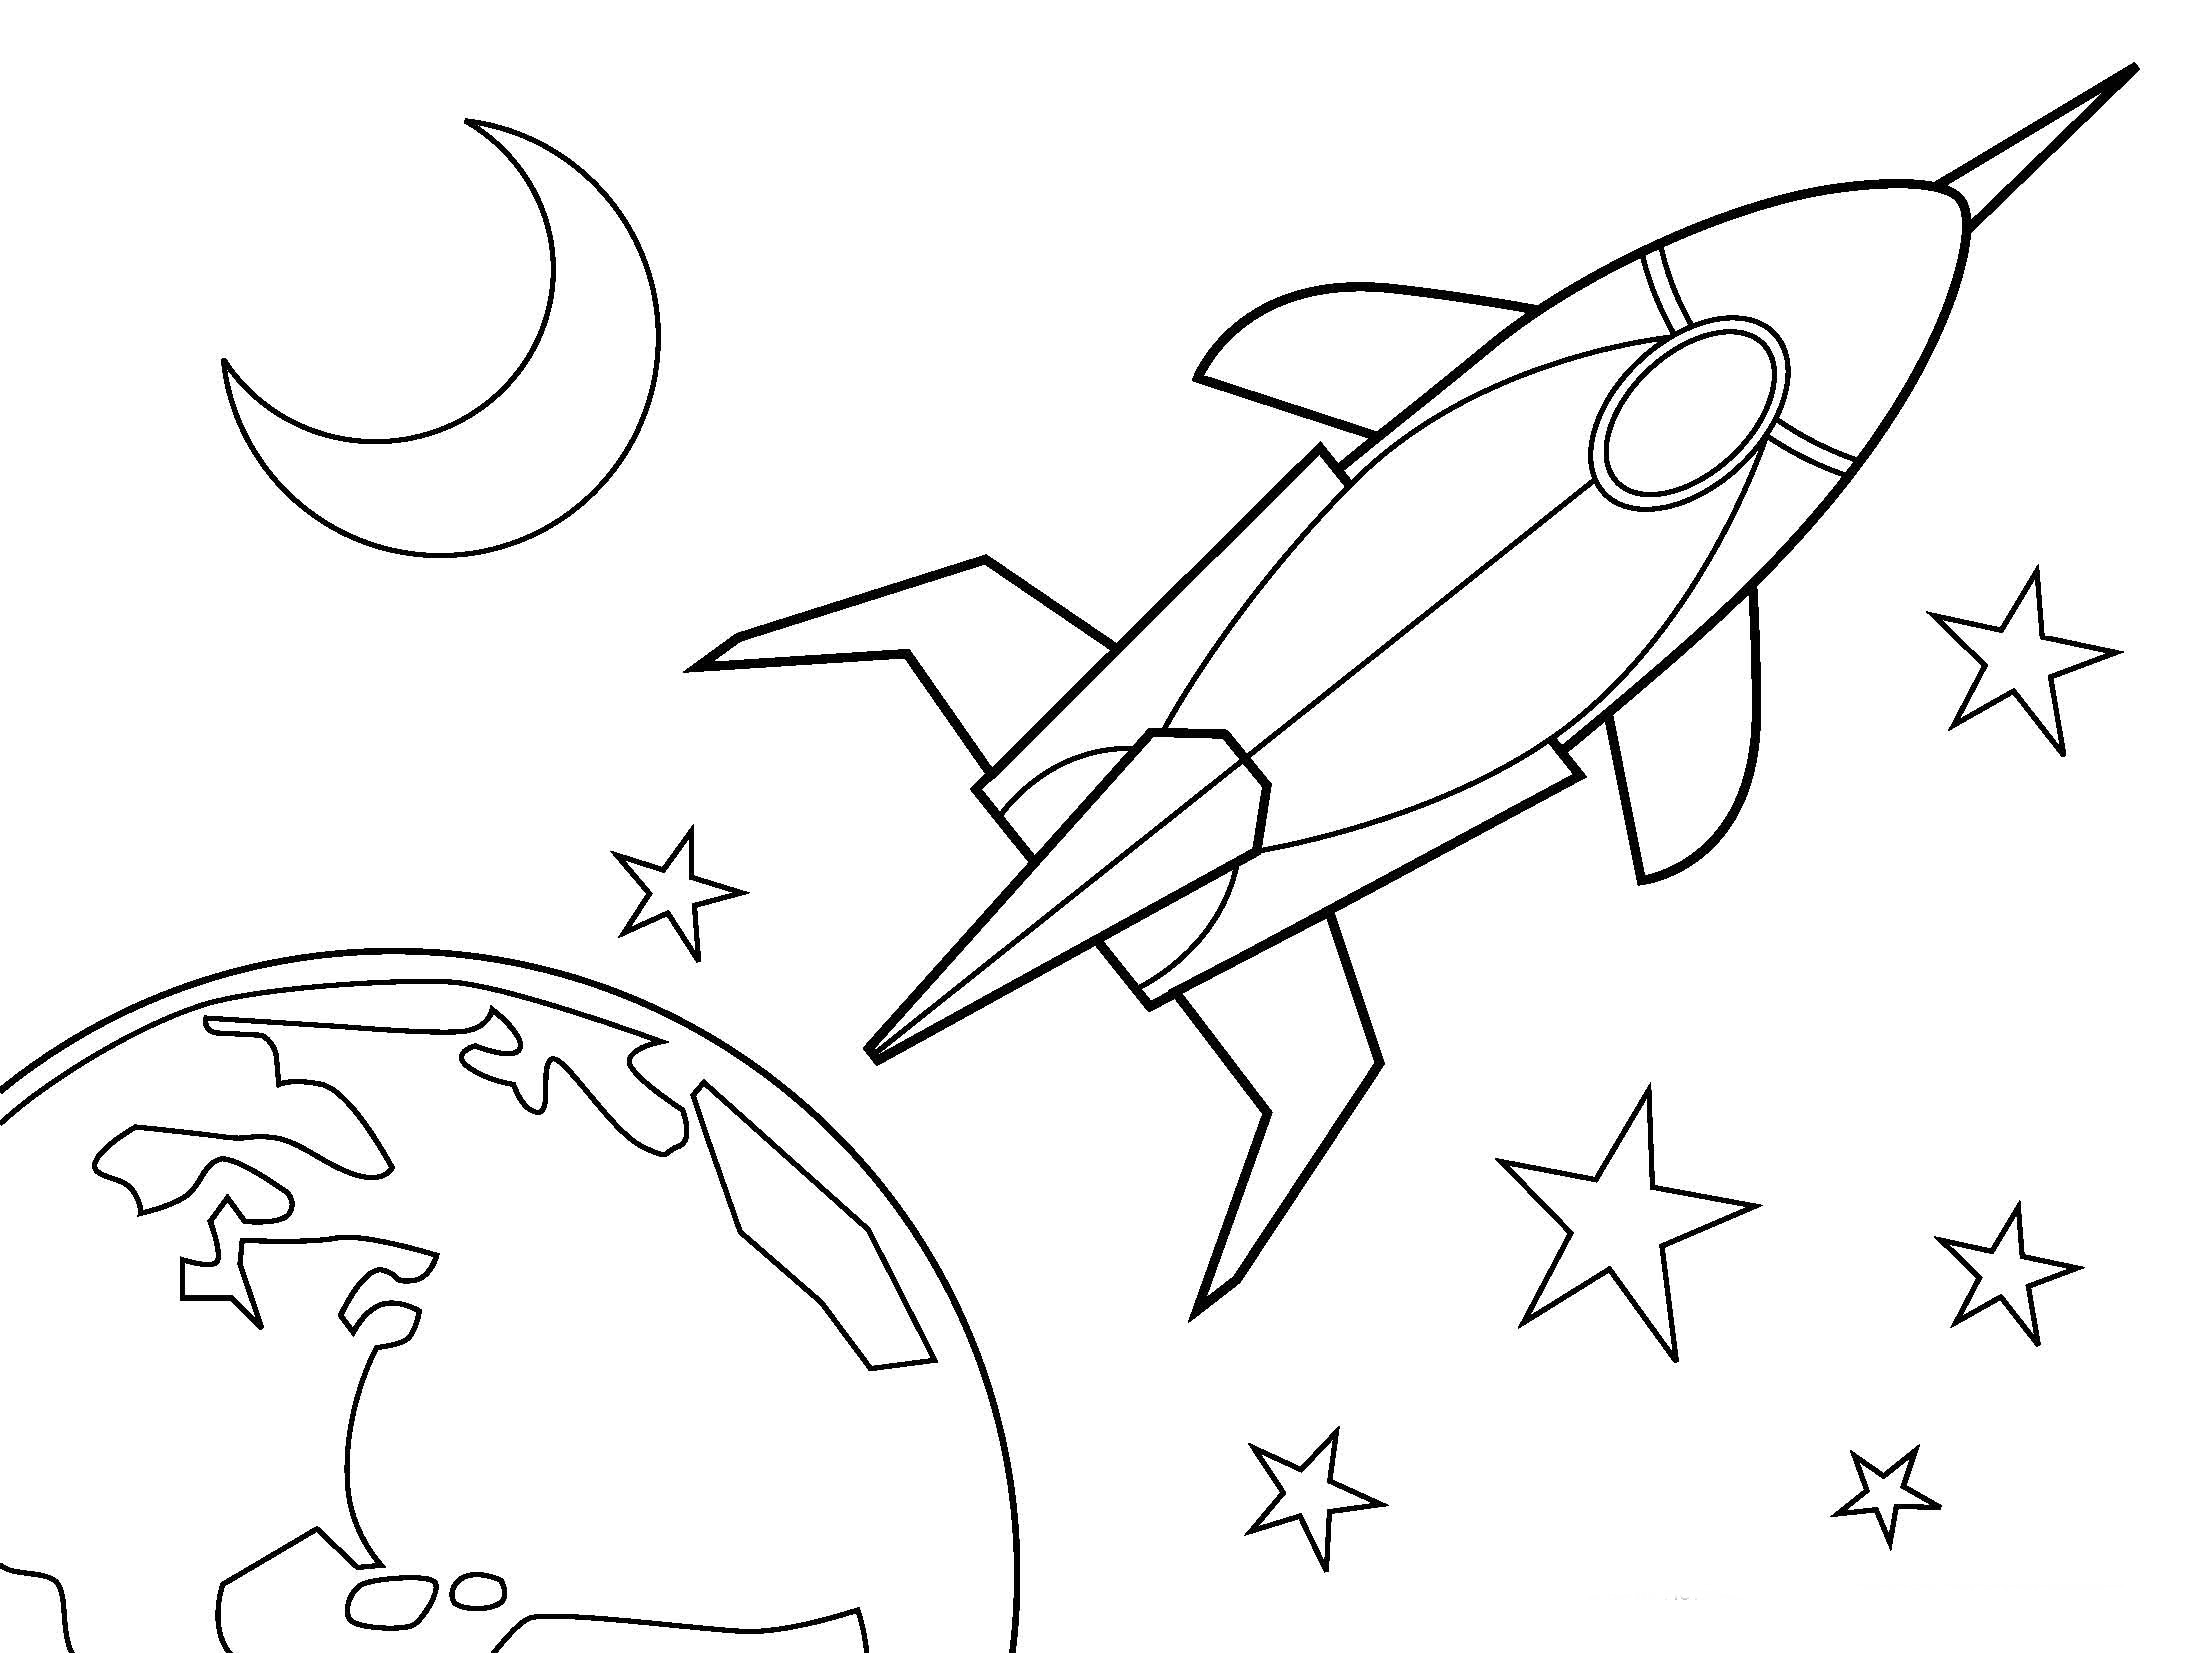 Раскраска про космос для детей 3 лет. Космос раскраска для детей. Раскраска. В космосе. Раскраска для малышей. Космос. Детские раскраски космос.